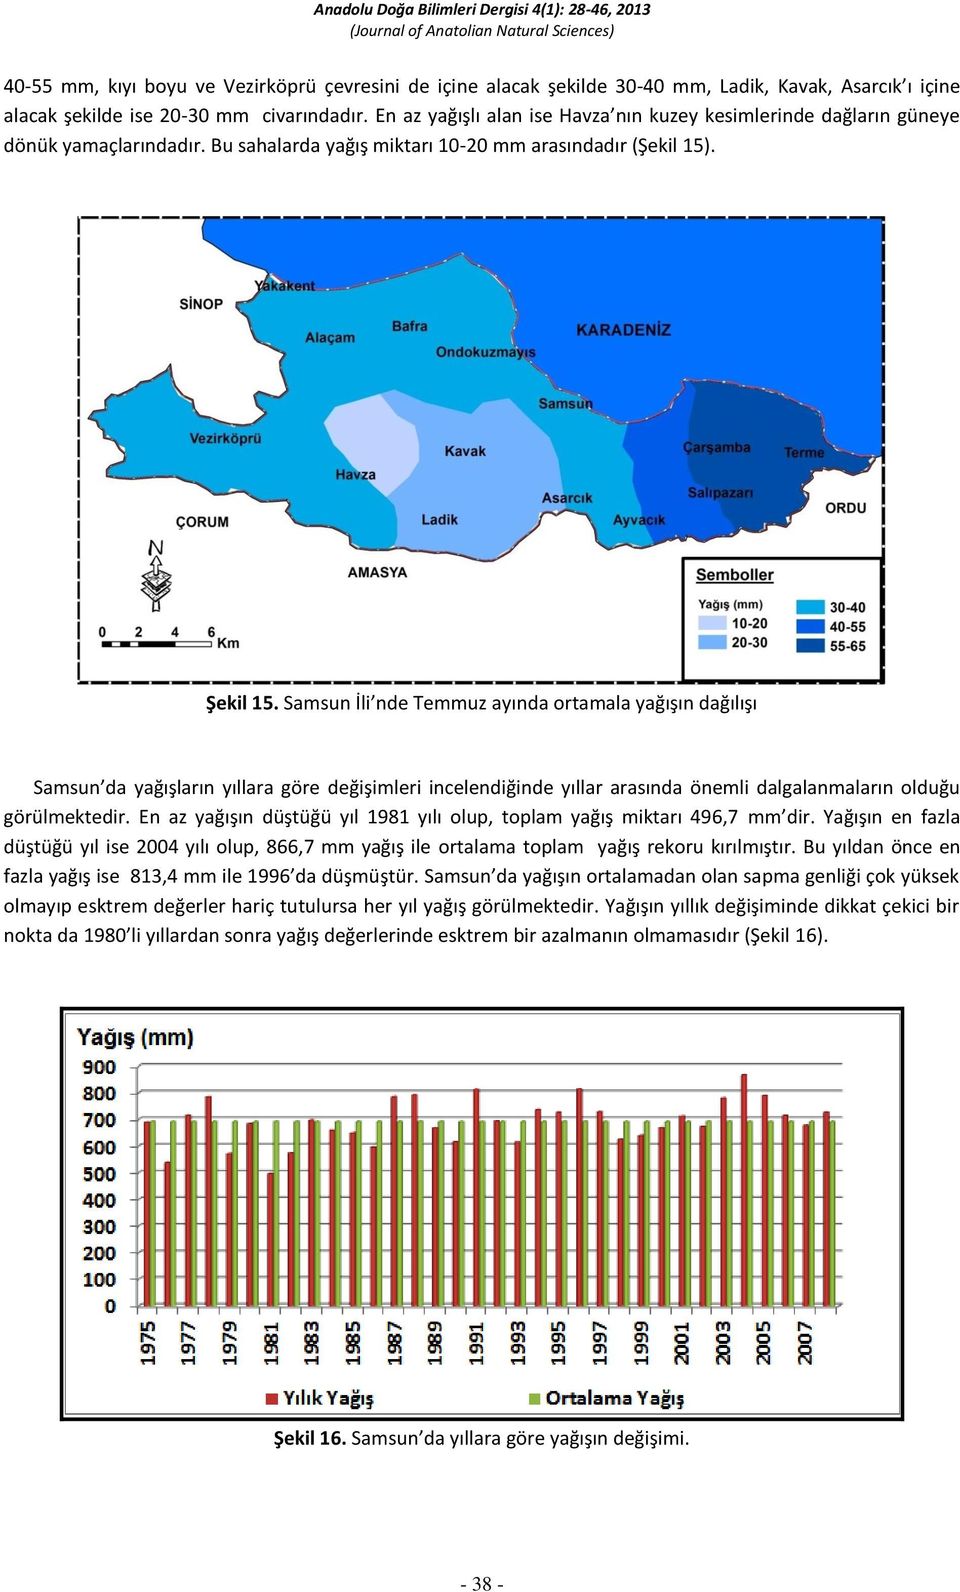 Samsun İli nde Temmuz ayında ortamala yağışın dağılışı Samsun da yağışların yıllara göre değişimleri incelendiğinde yıllar arasında önemli dalgalanmaların olduğu görülmektedir.